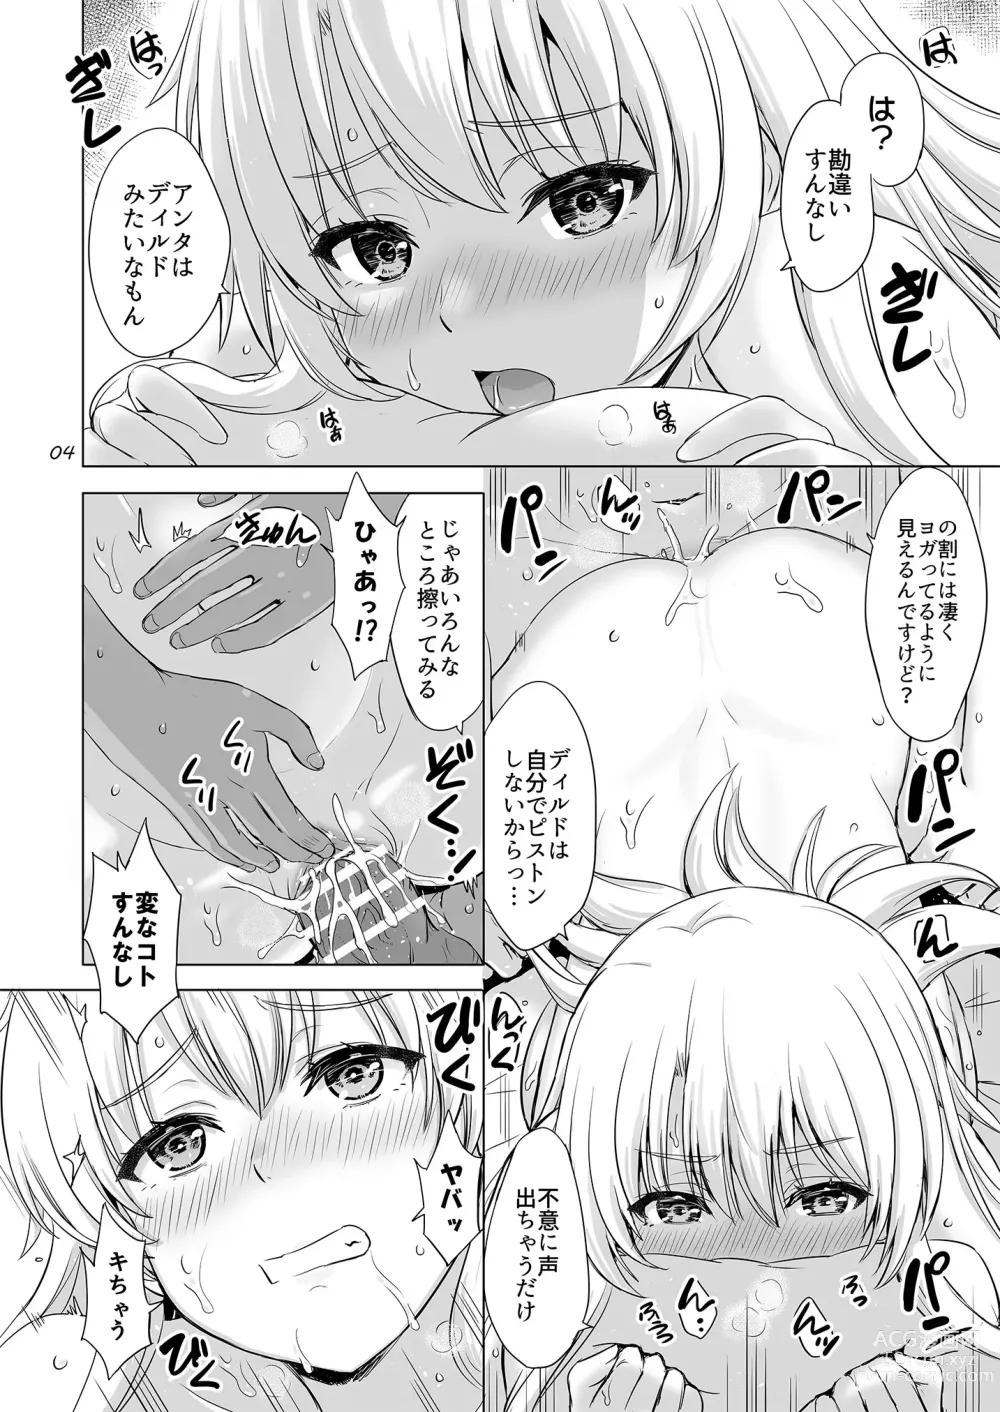 Page 3 of doujinshi Dokyusei-tachi to no Sukoshi Ibitsu na Nikutai Kankei. - Yumiko miura & Saki kawasaki each have sex with Hachiman.